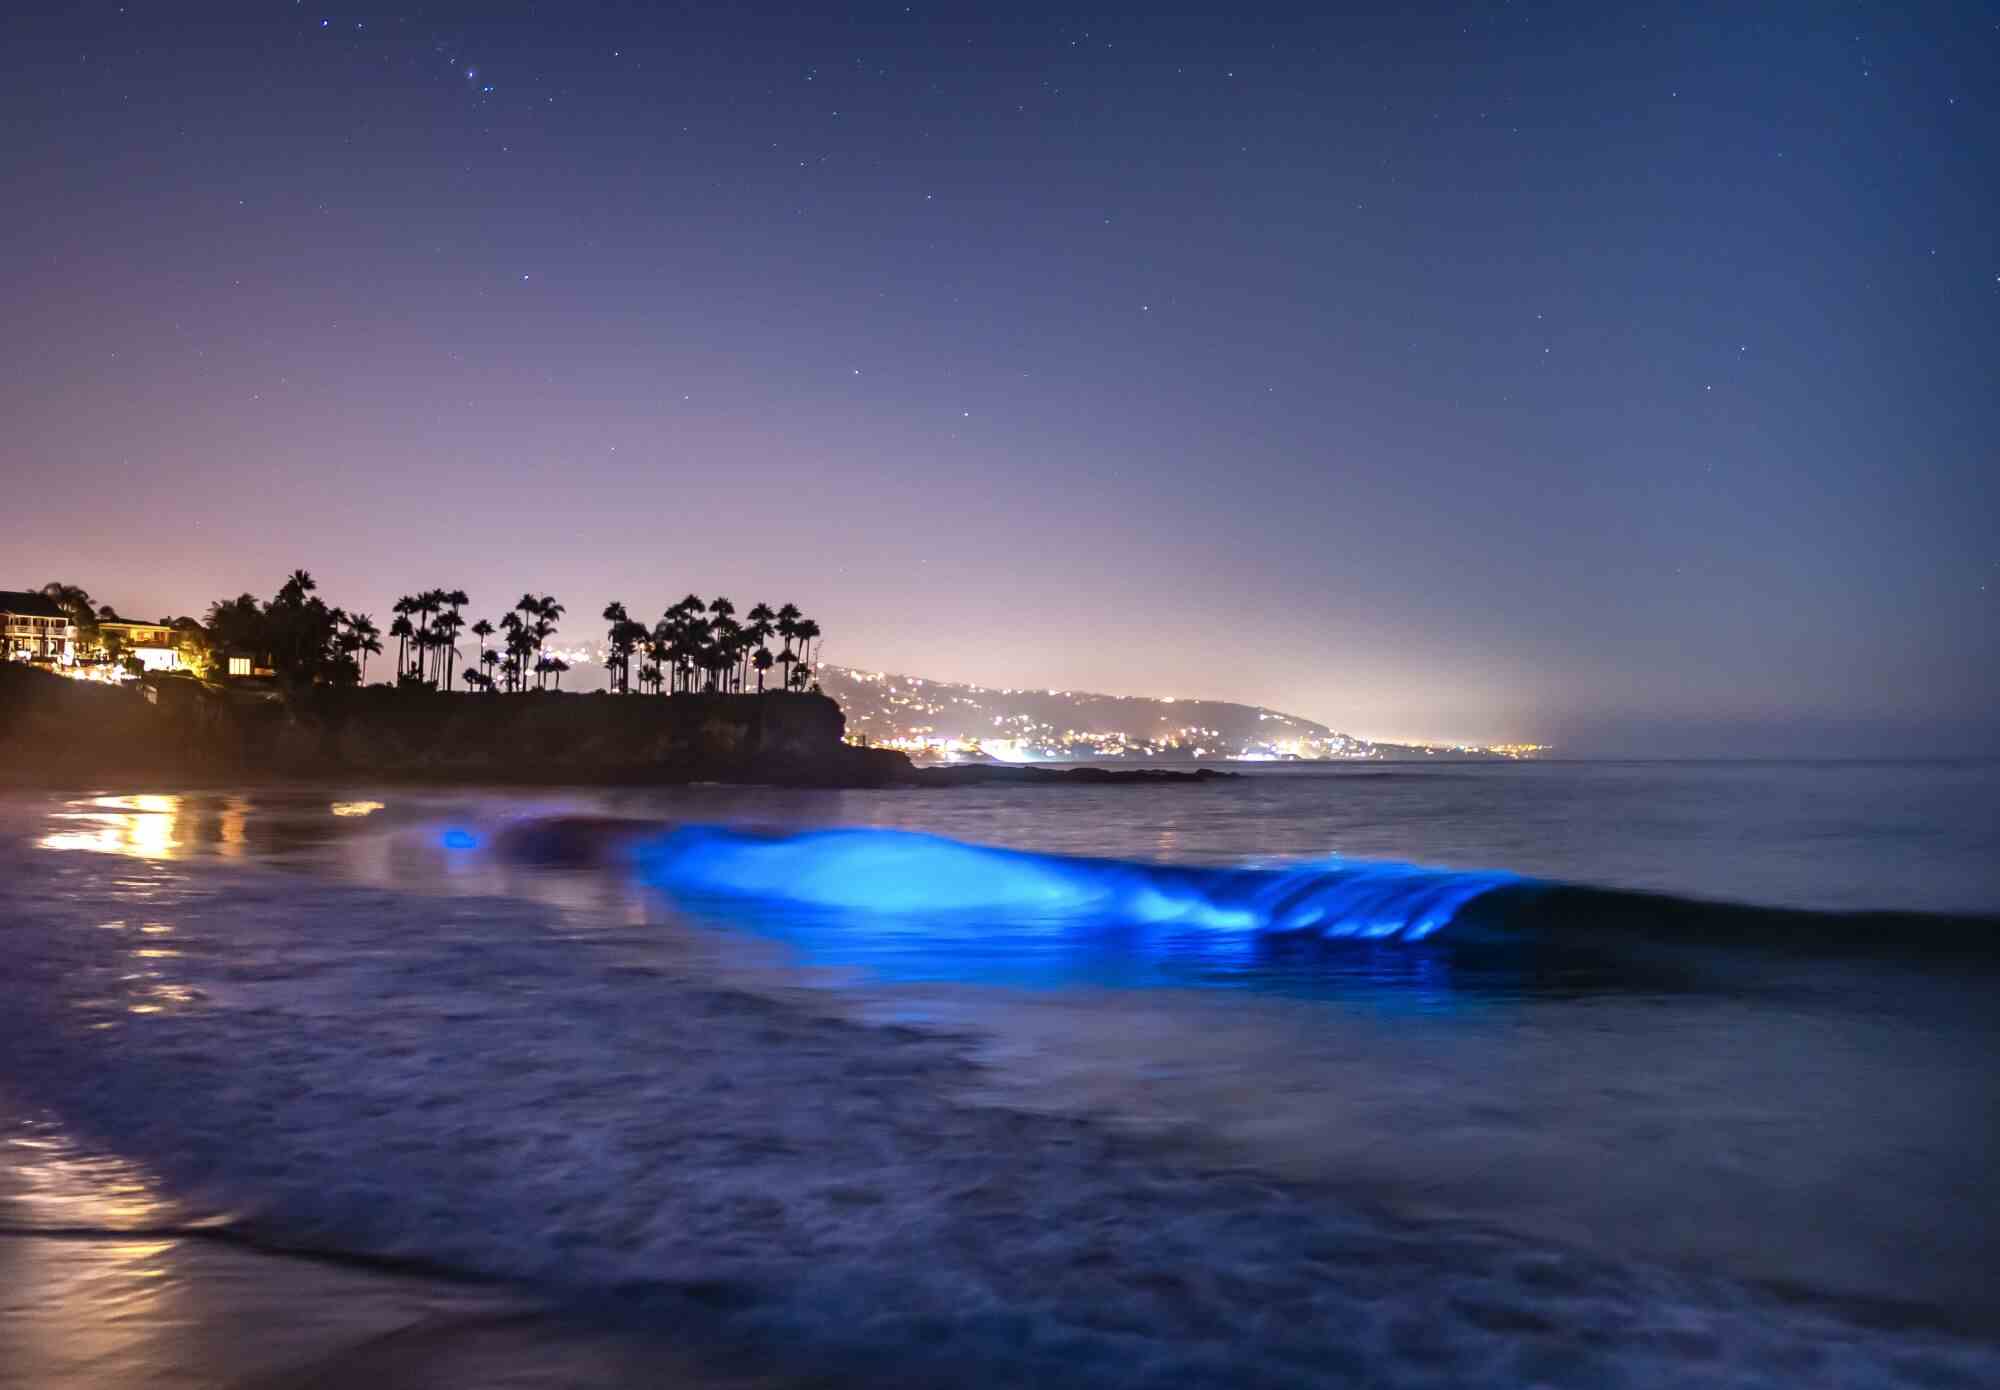 Biolumineszierendes Leuchten in einer Welle, die auf einen Strand zusteuert.  Im Hintergrund sind Bäume und Lichter auf einem Landvorsprung.